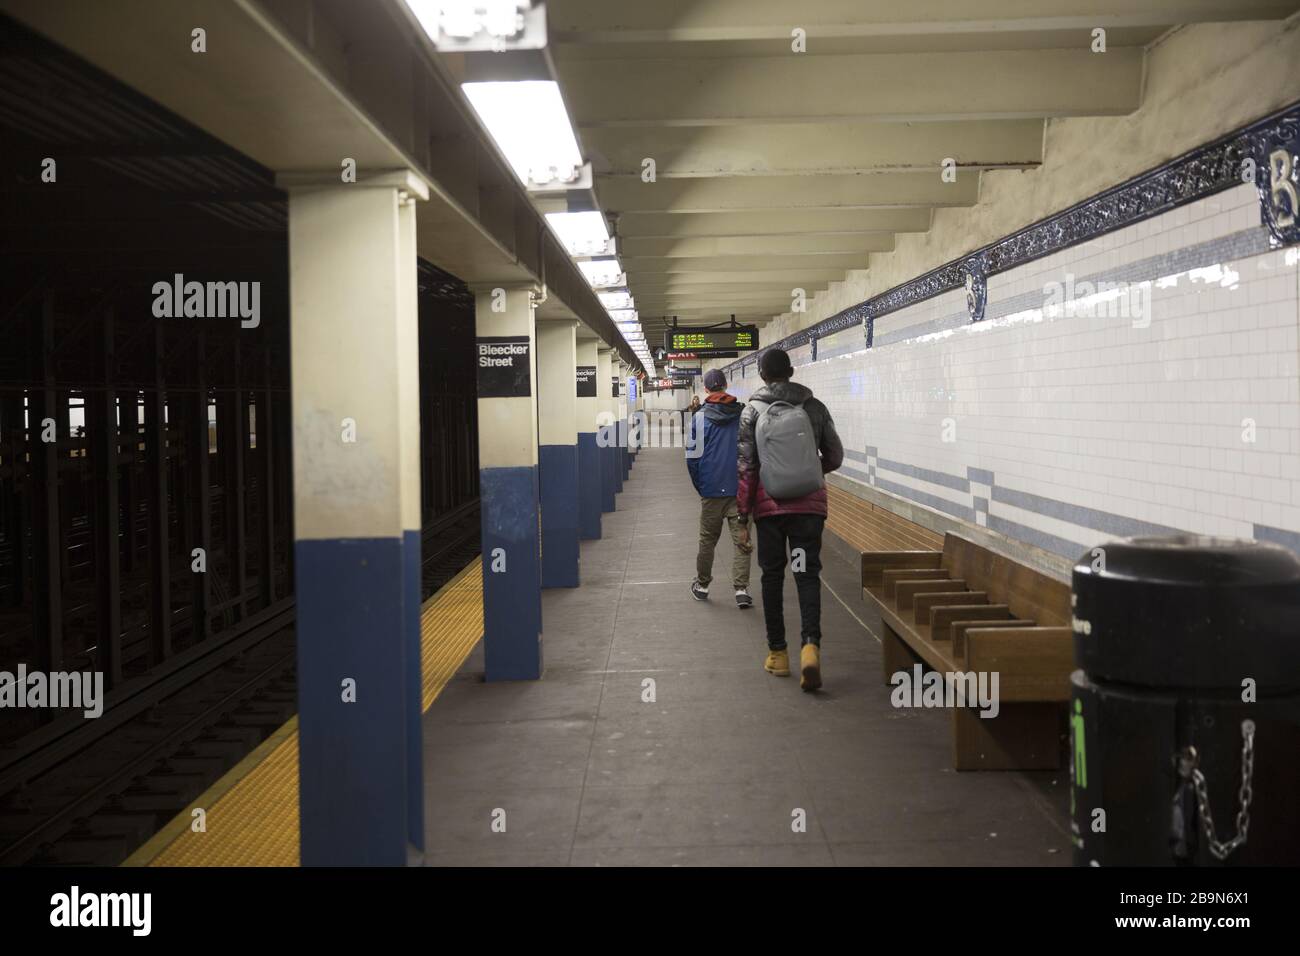 Die U-Bahn-Station Bleeker Street, die normalerweise immer besetzt ist, steht heute mit dem Aufstieg des Coronavirus und der Sperrung in New York meist leer. Stockfoto